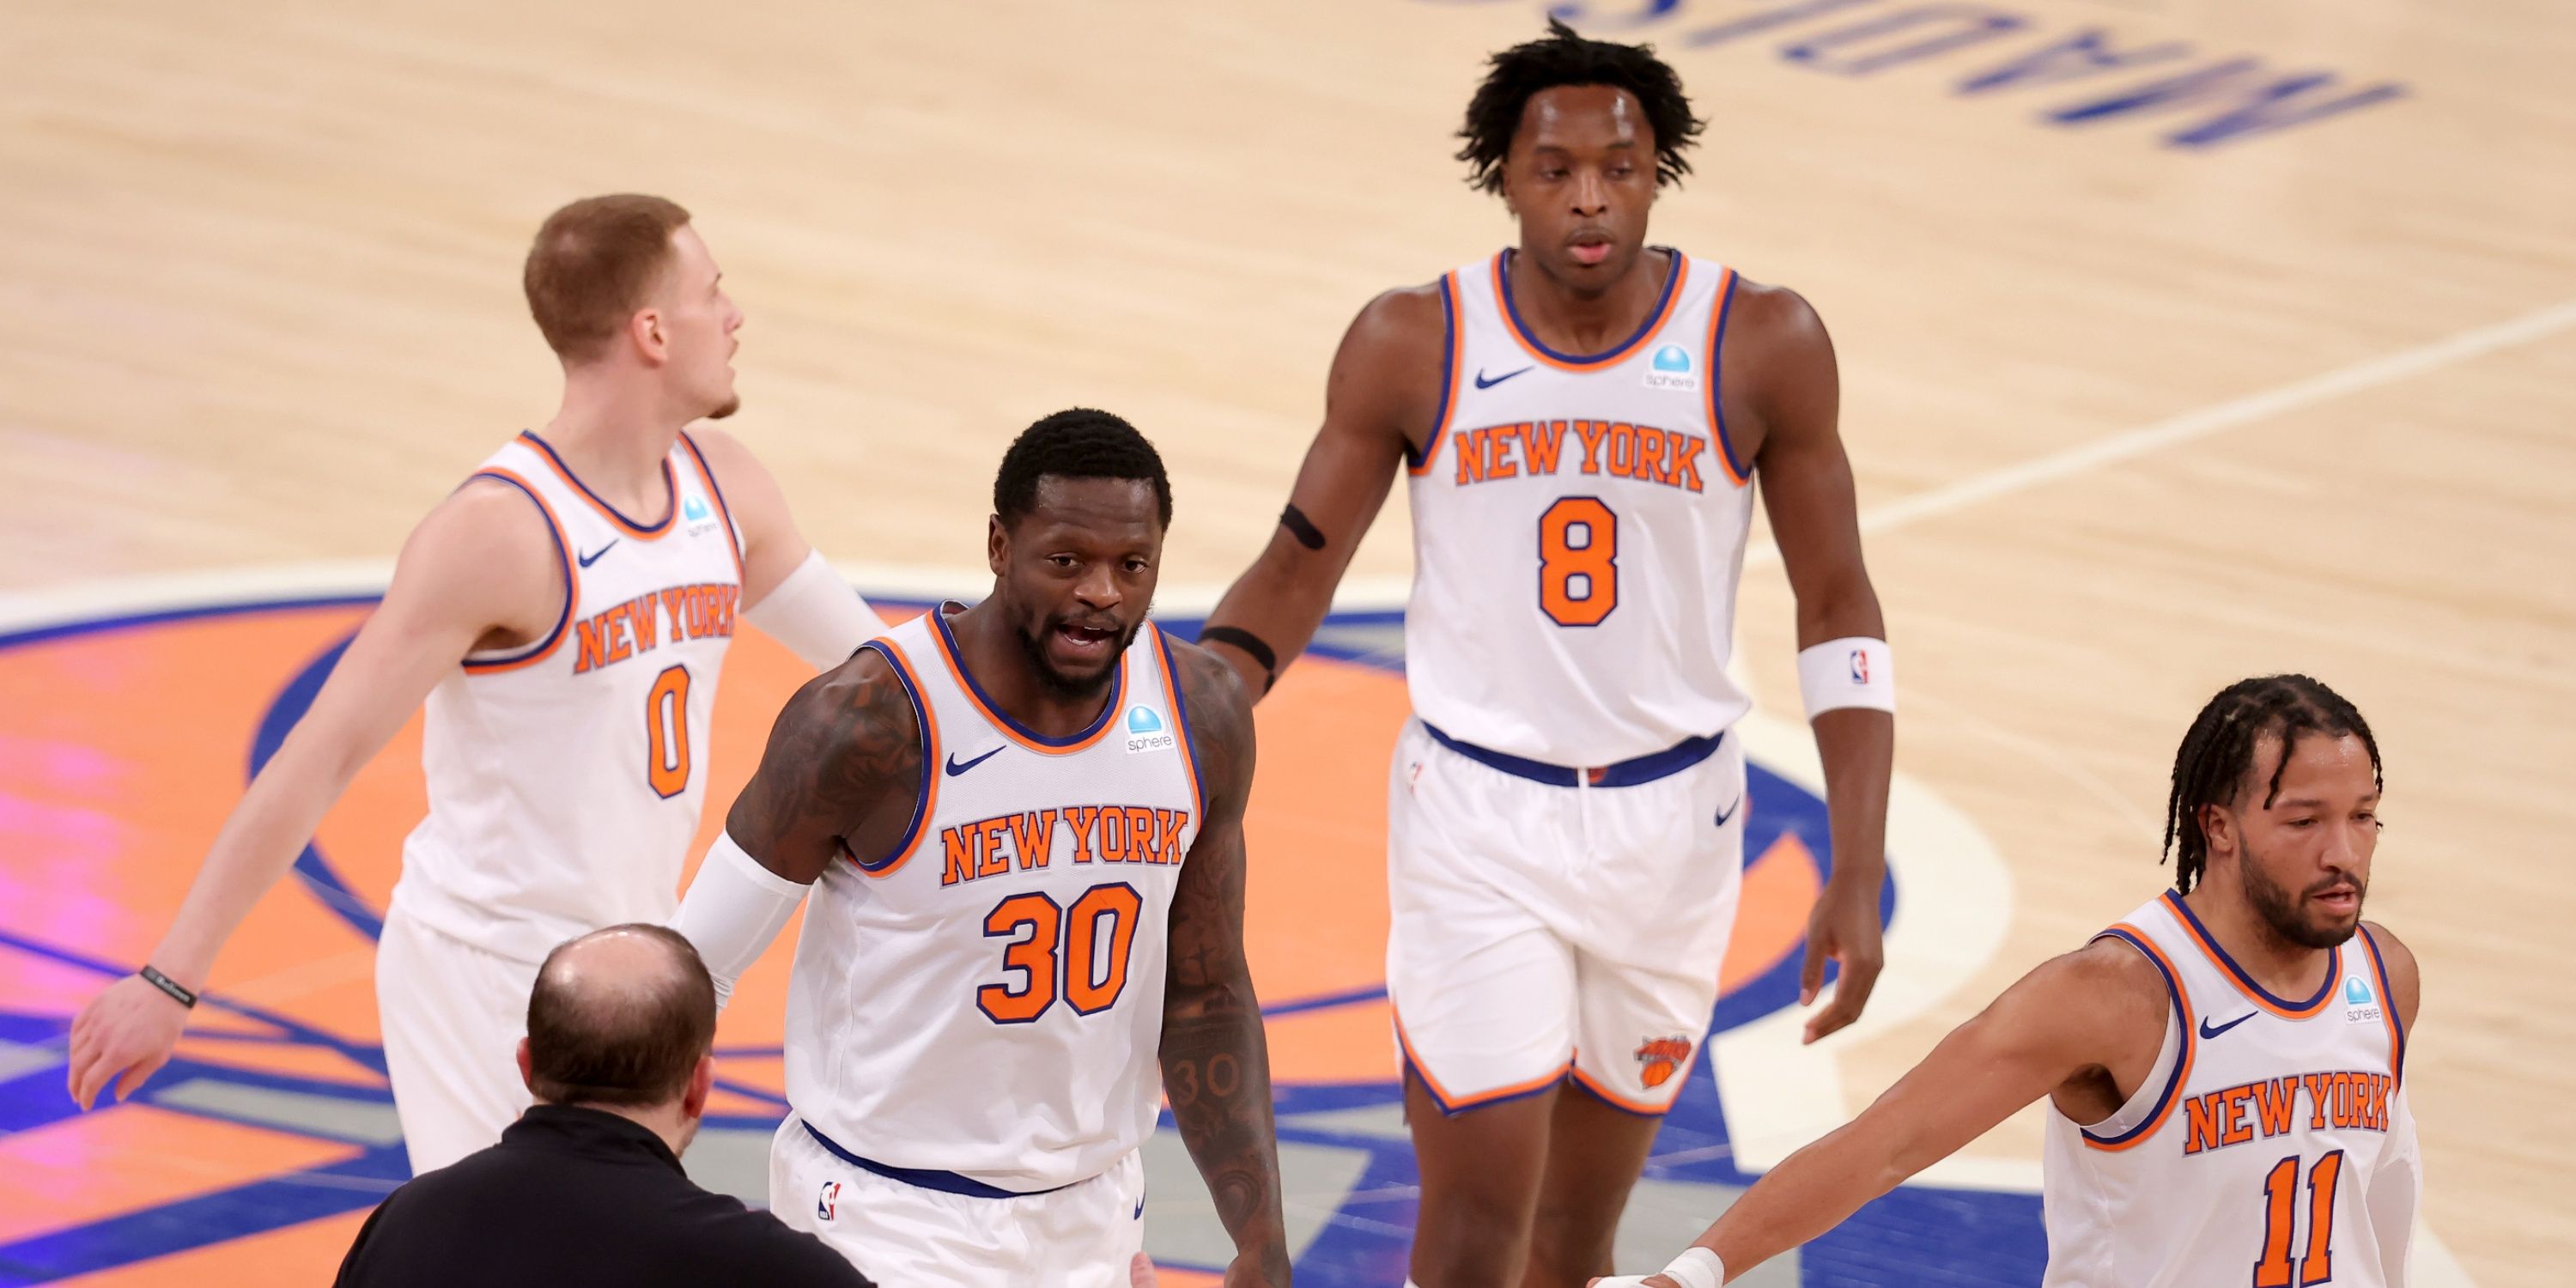 Julius Randle rejeita perder jogos por lesão pelo Knicks - Ananindeua